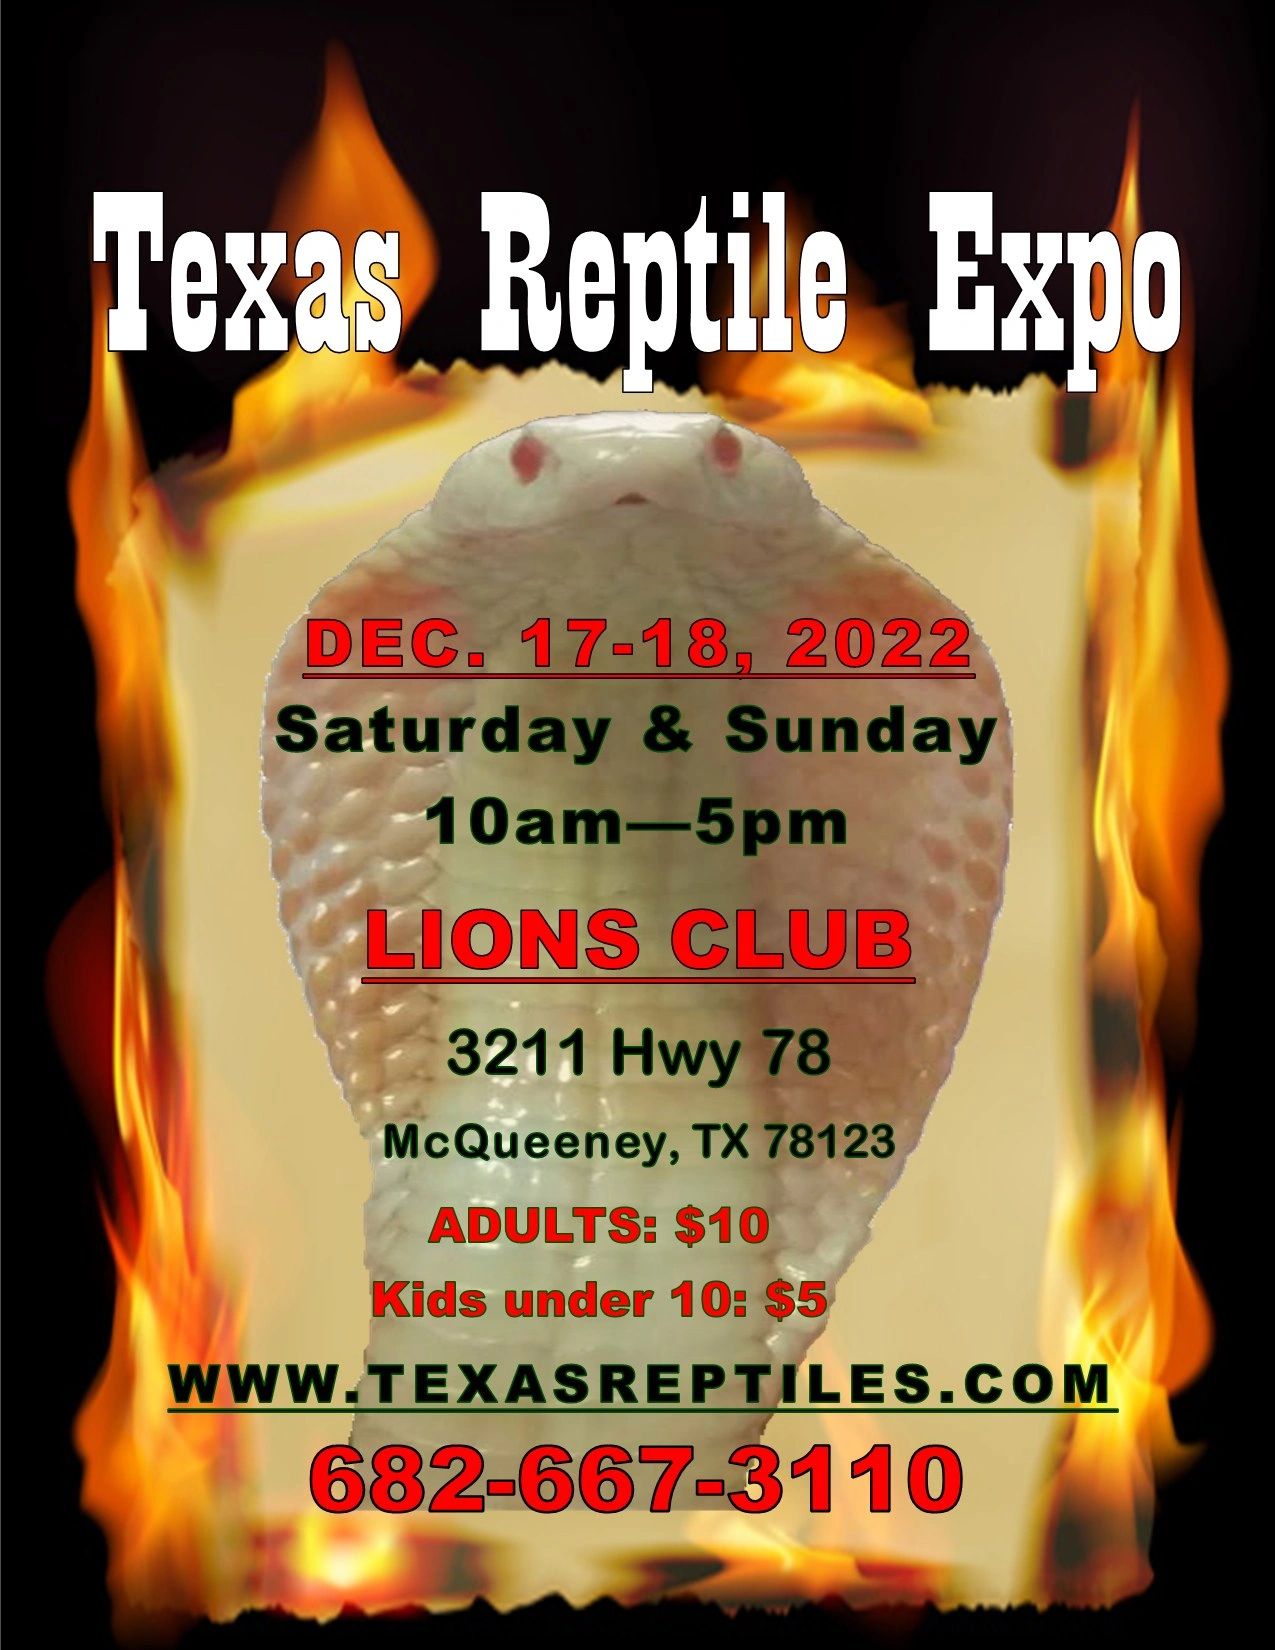 Texas Reptile Expos